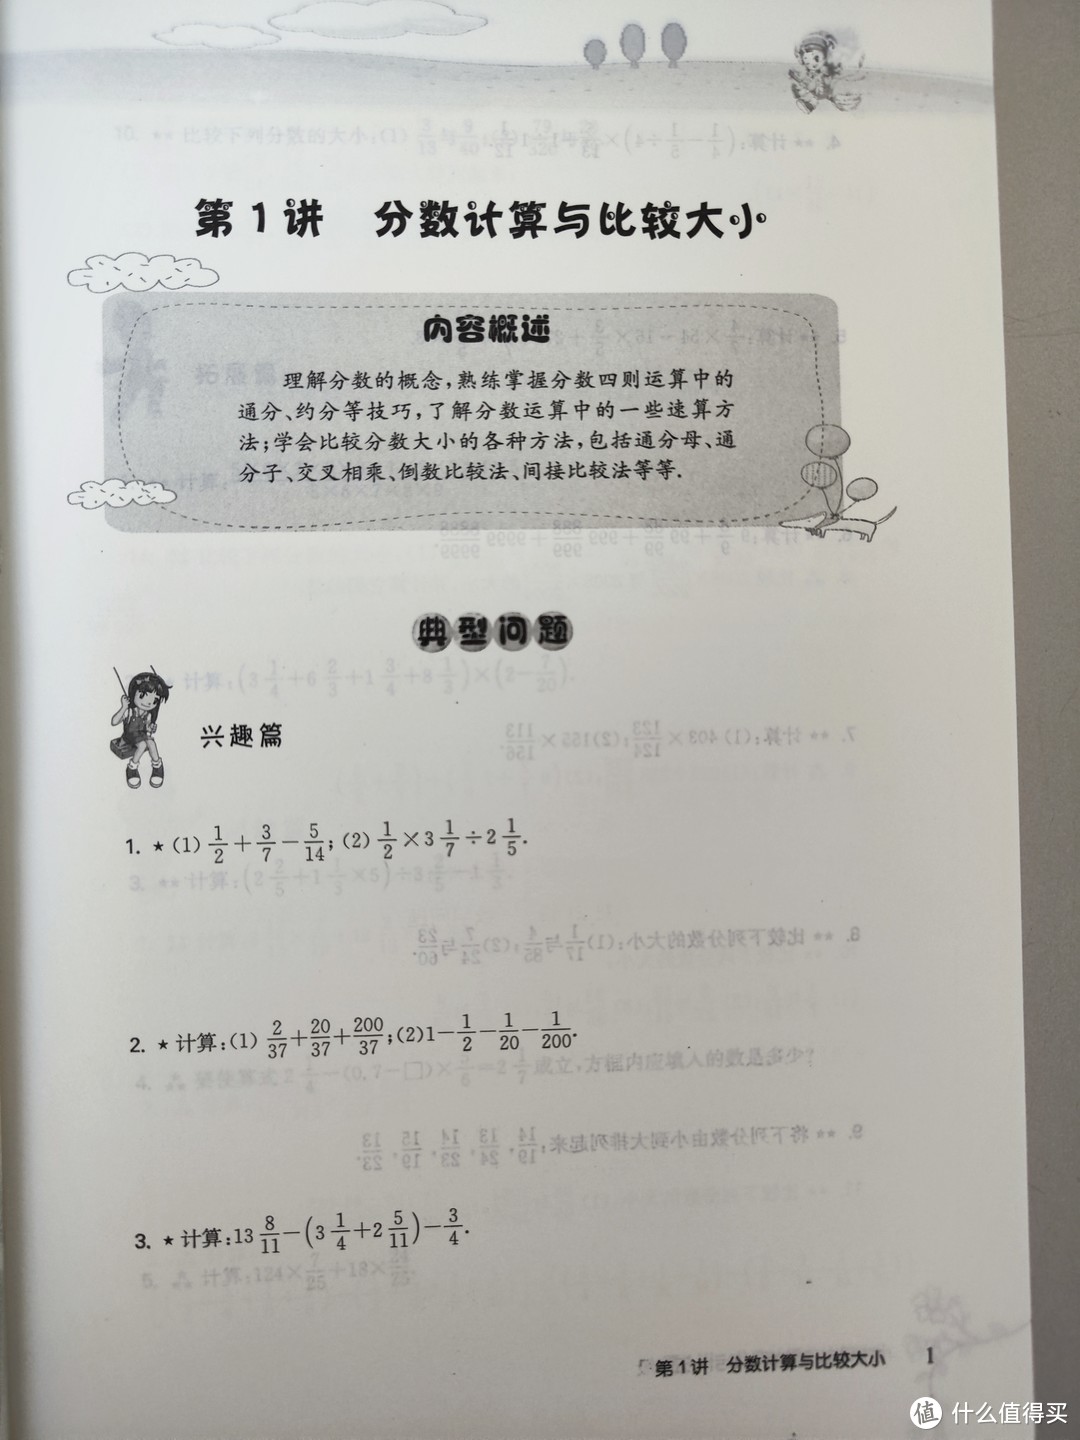 华东师范大学出版社《高思学校竞赛数学导引》五六年级合晒